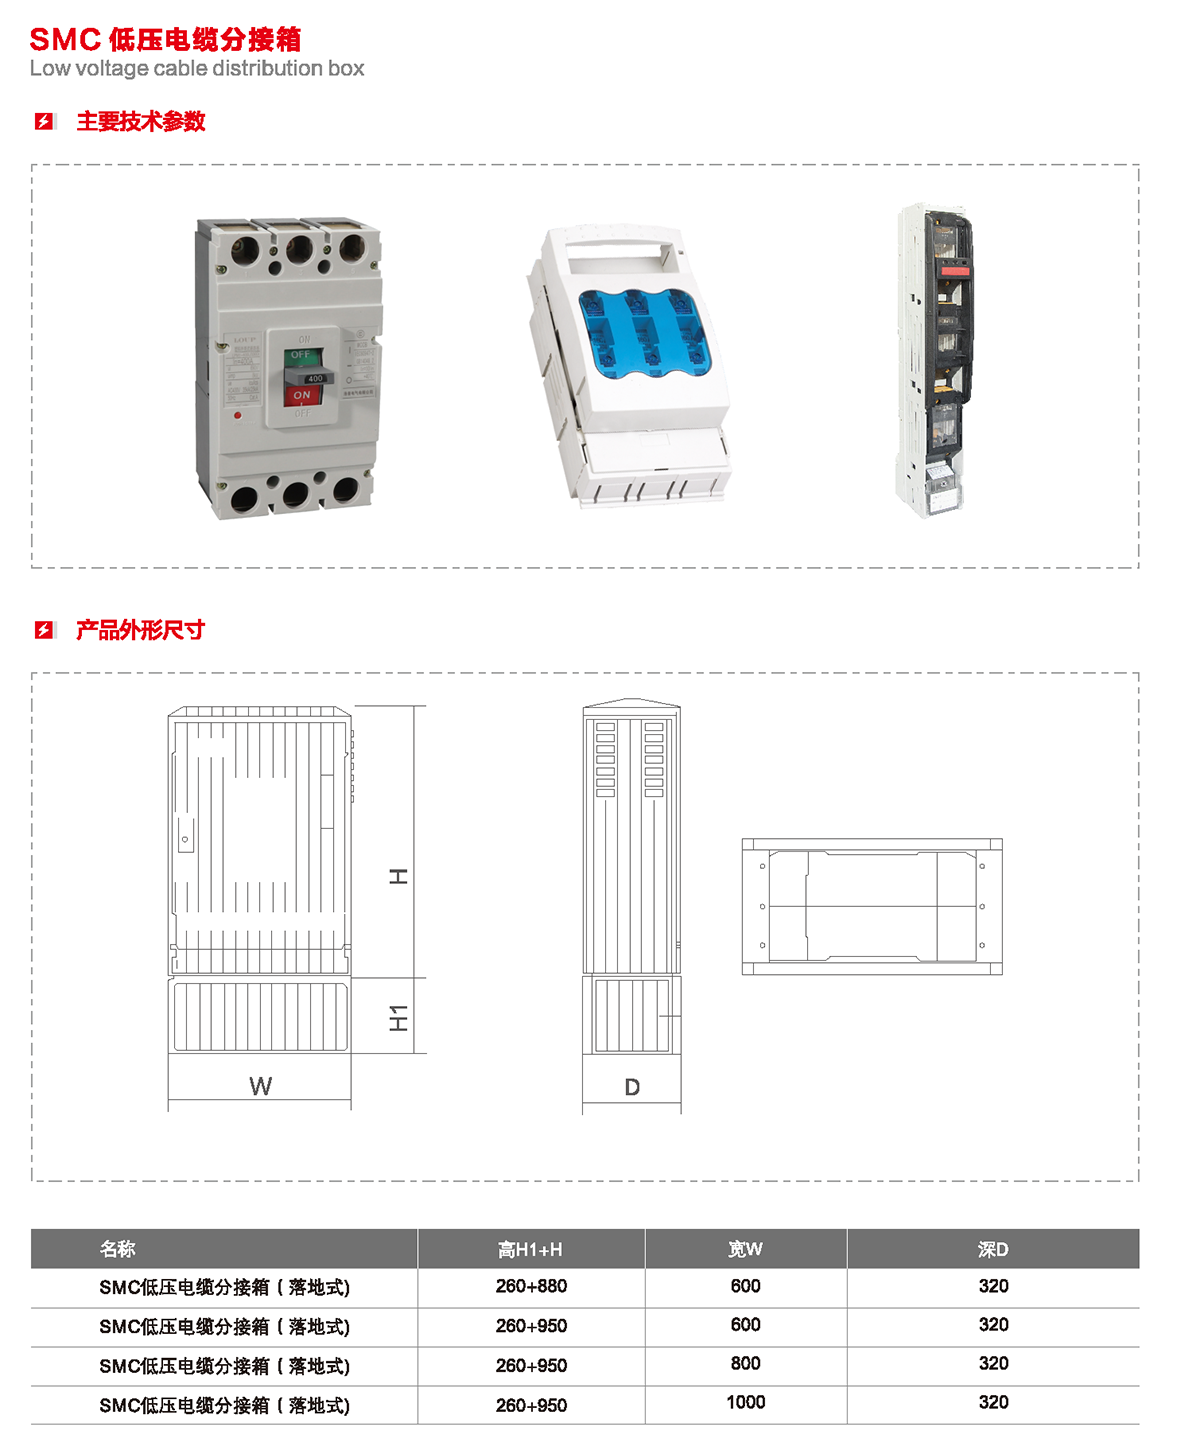 SMC 低壓電纜分接箱主要技術參數、產品外形尺寸